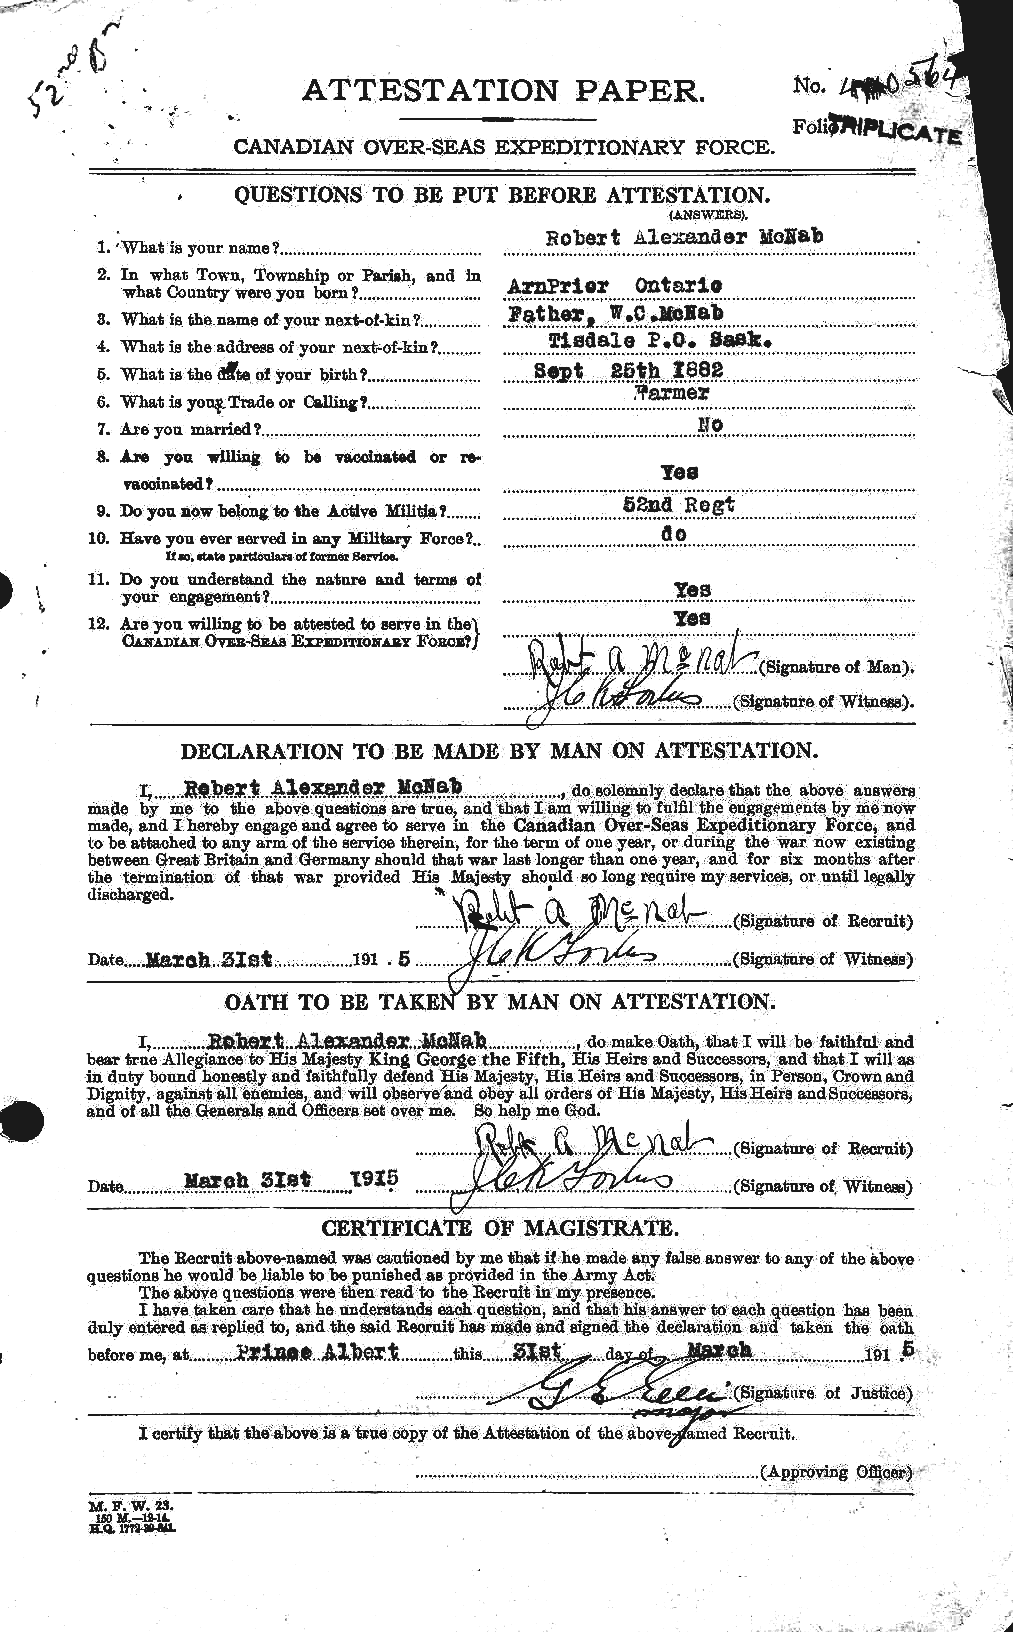 Dossiers du Personnel de la Première Guerre mondiale - CEC 536273a